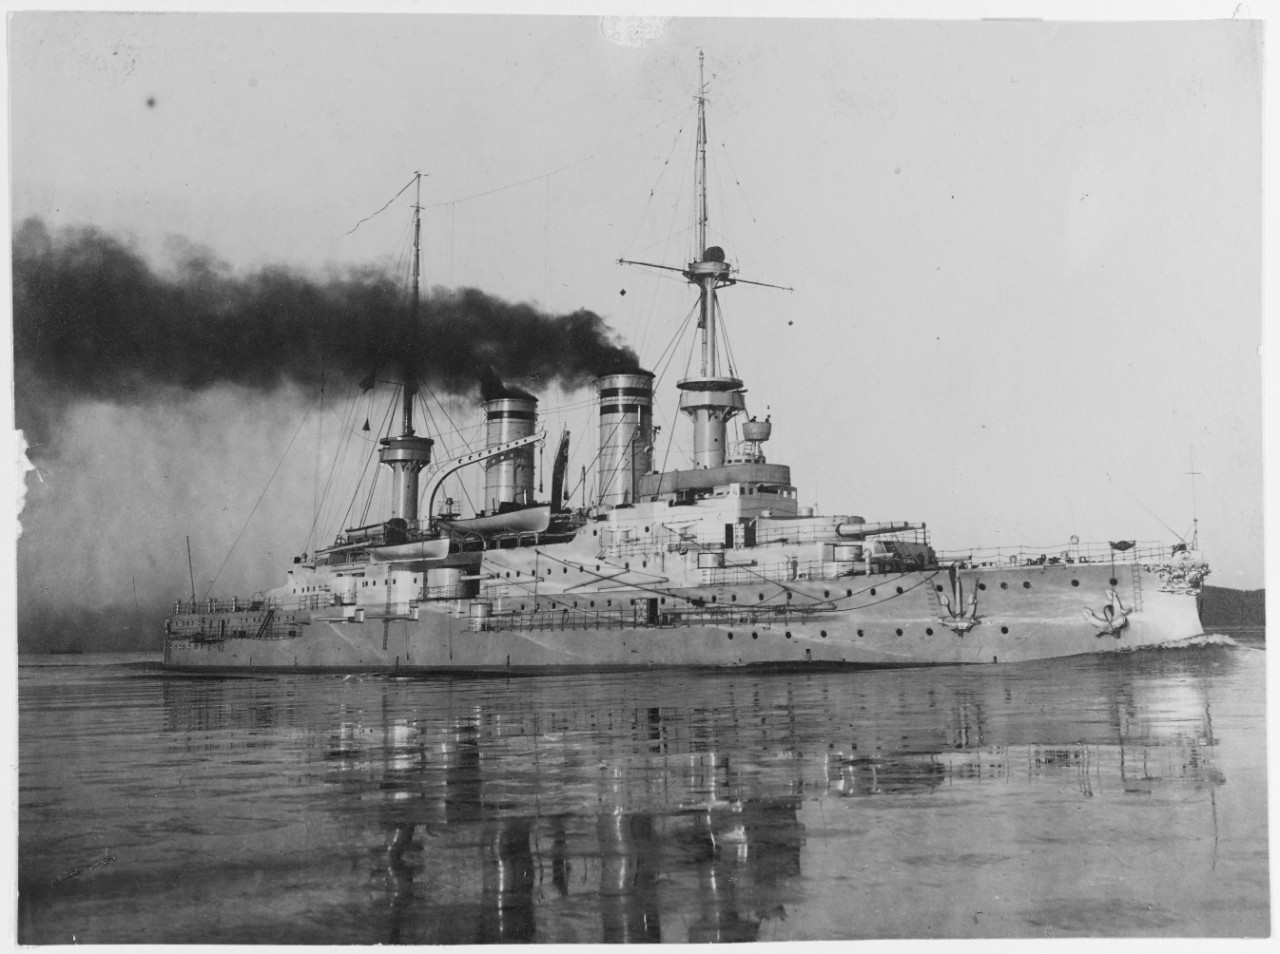 MECKLENBURG (German battleship, 1901-1921)